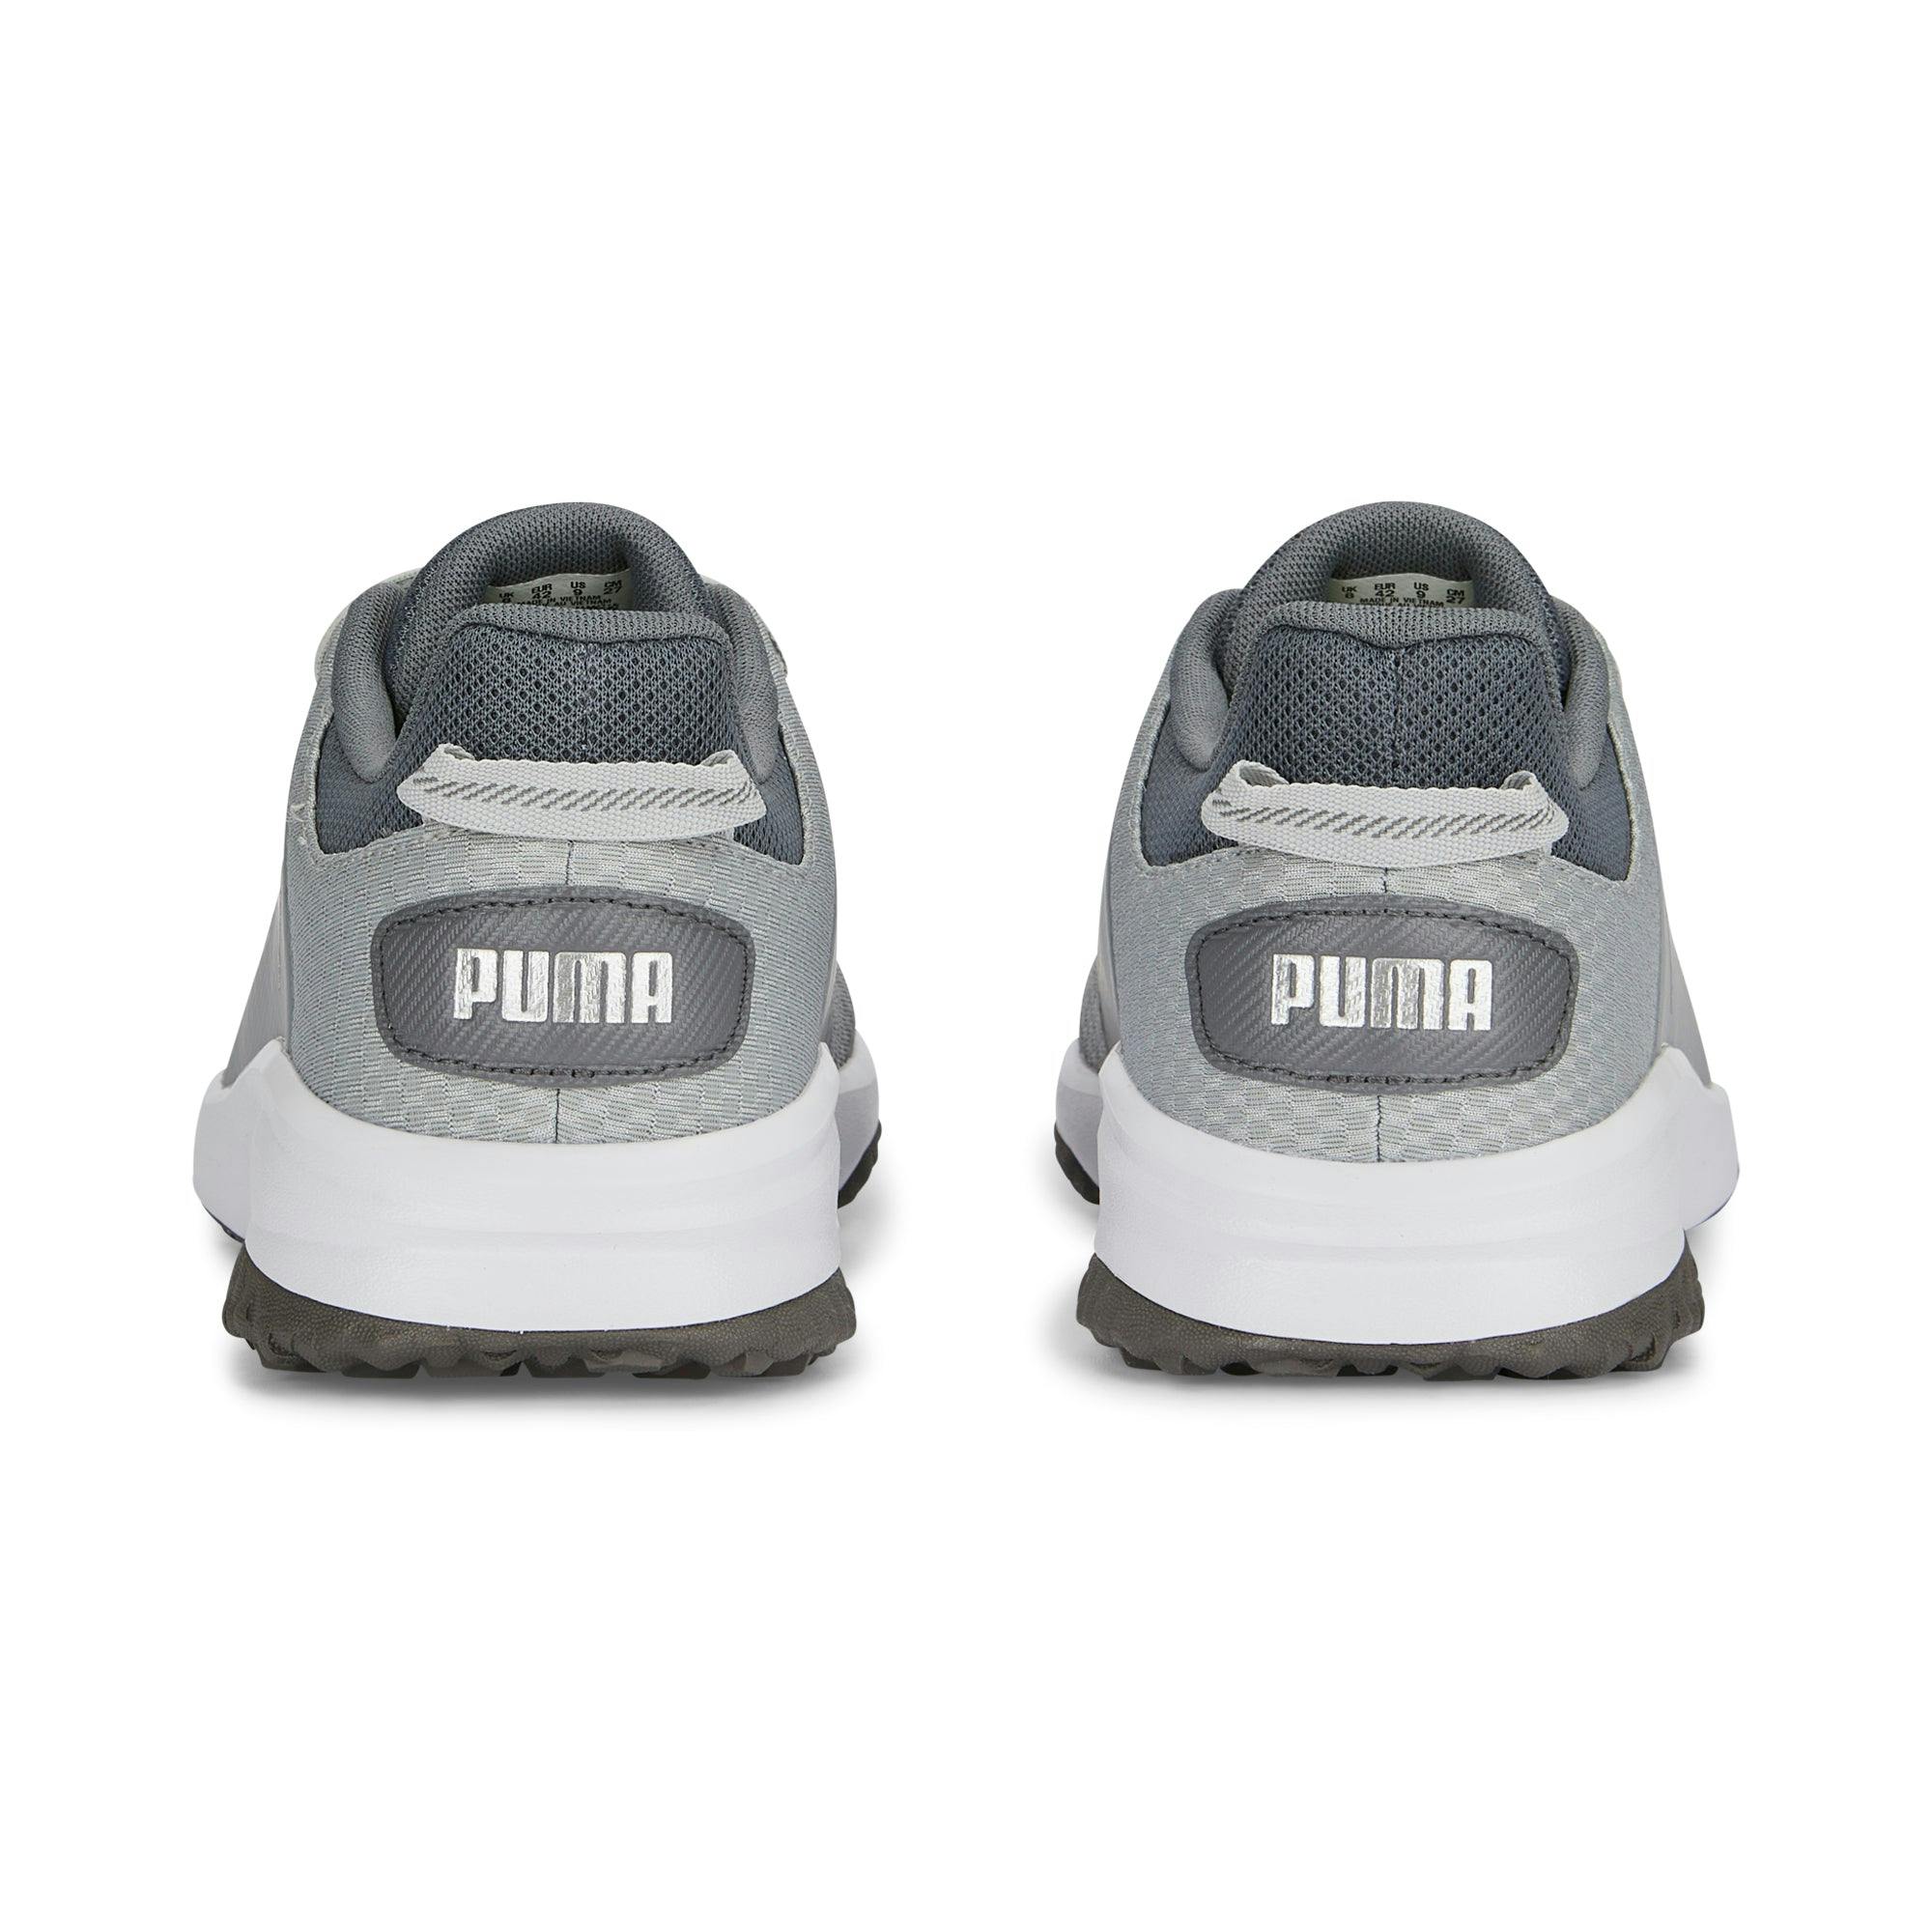 Puma Men's Fusion Grip Extra Wide Golf Shoes